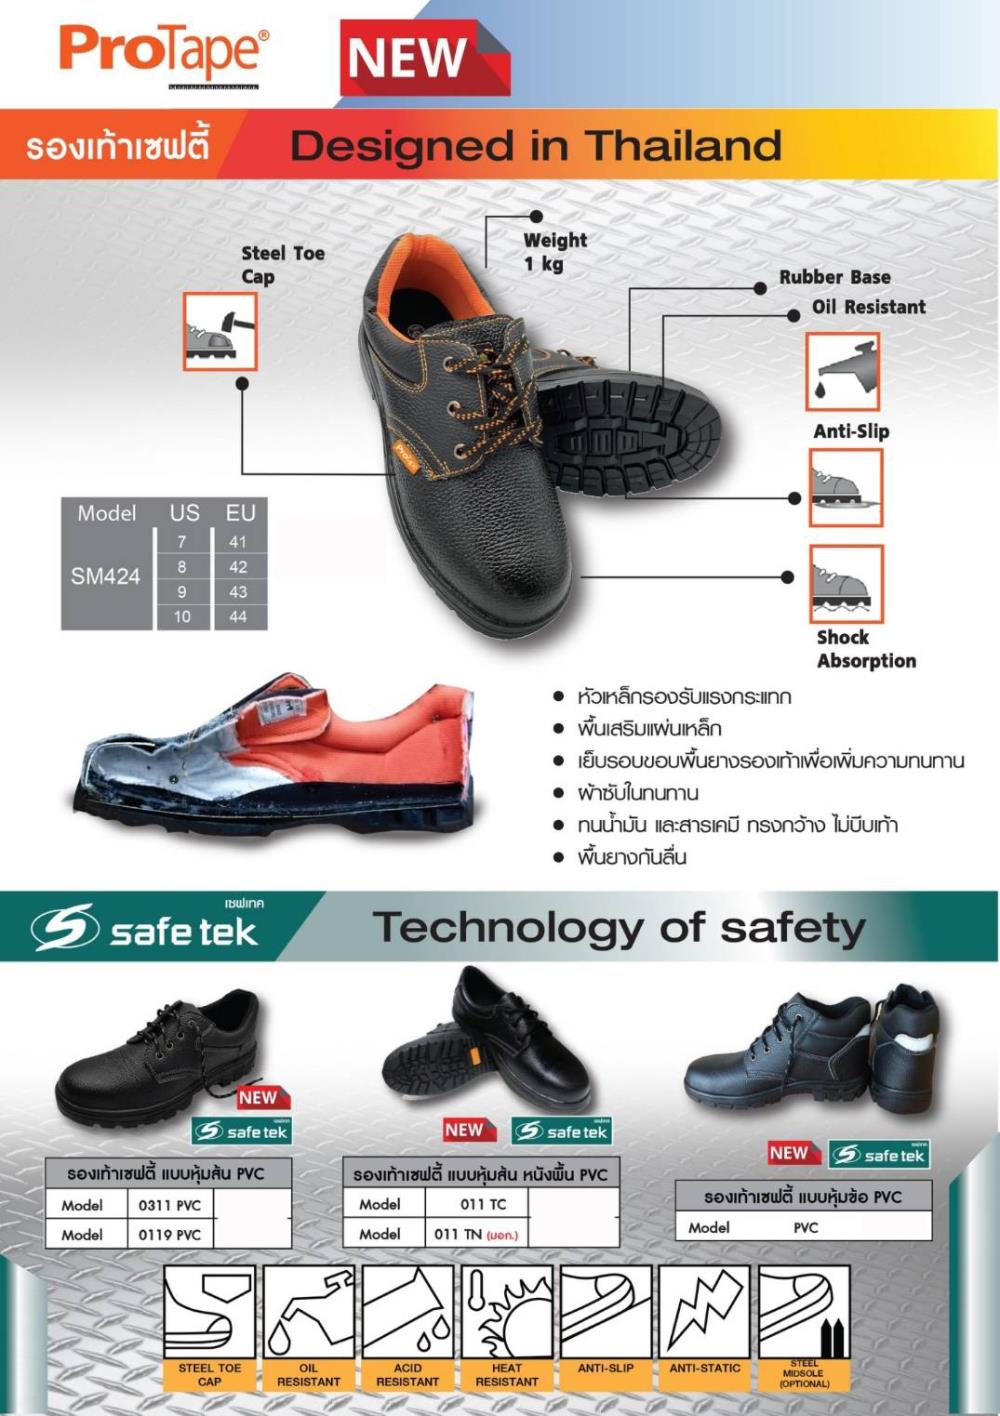 รองเท้า Safety (Safety Shoes)  (ขายส่ง จำนวนมาก),#ขาย #รองเท้าsafety #รองเท้าเซฟตี้ #เซฟตี้ #safetyshoes #safety #ก่อสร้าง #โรงงาน #eec #รับเหมา #dealer #distributor #ตัวแทนจำหน่าย #นิคมอุตสาหกรรม #สินค้าอุตสาหกรรม #อุตสาหกรรม #industrial #engineering #construction #workicon #workicontech,,Plant and Facility Equipment/Safety Equipment/Safety Equipment & Accessories